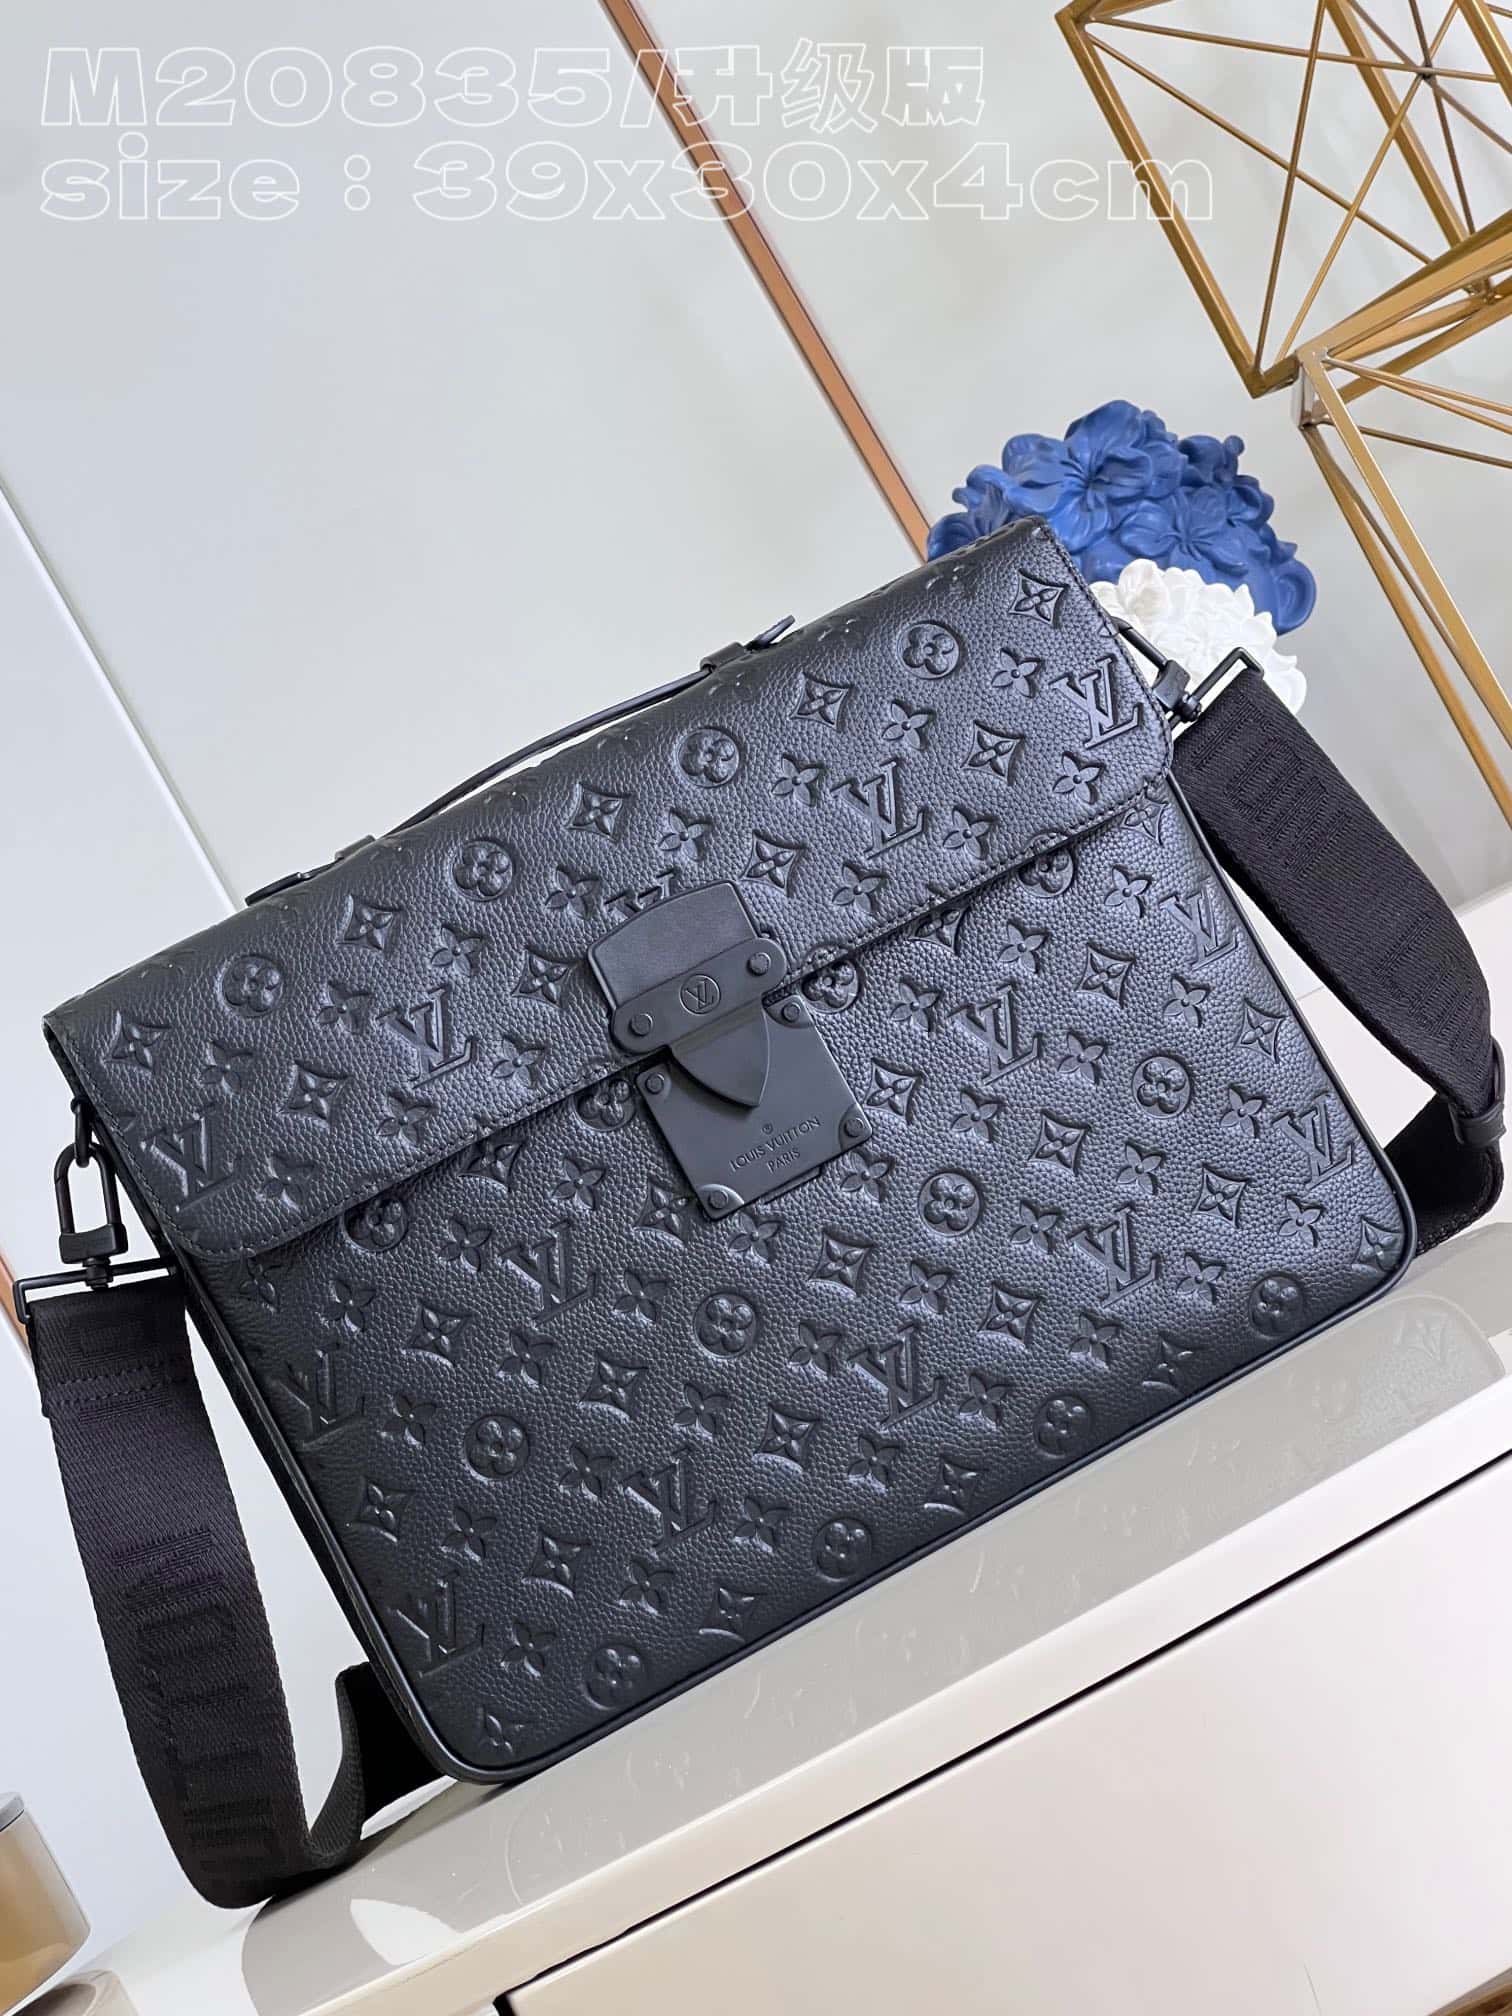 Shop Louis Vuitton MONOGRAM Monogram A4 2WAY Plain Leather Logo Business &  Briefcases (M20835) by Bellaris